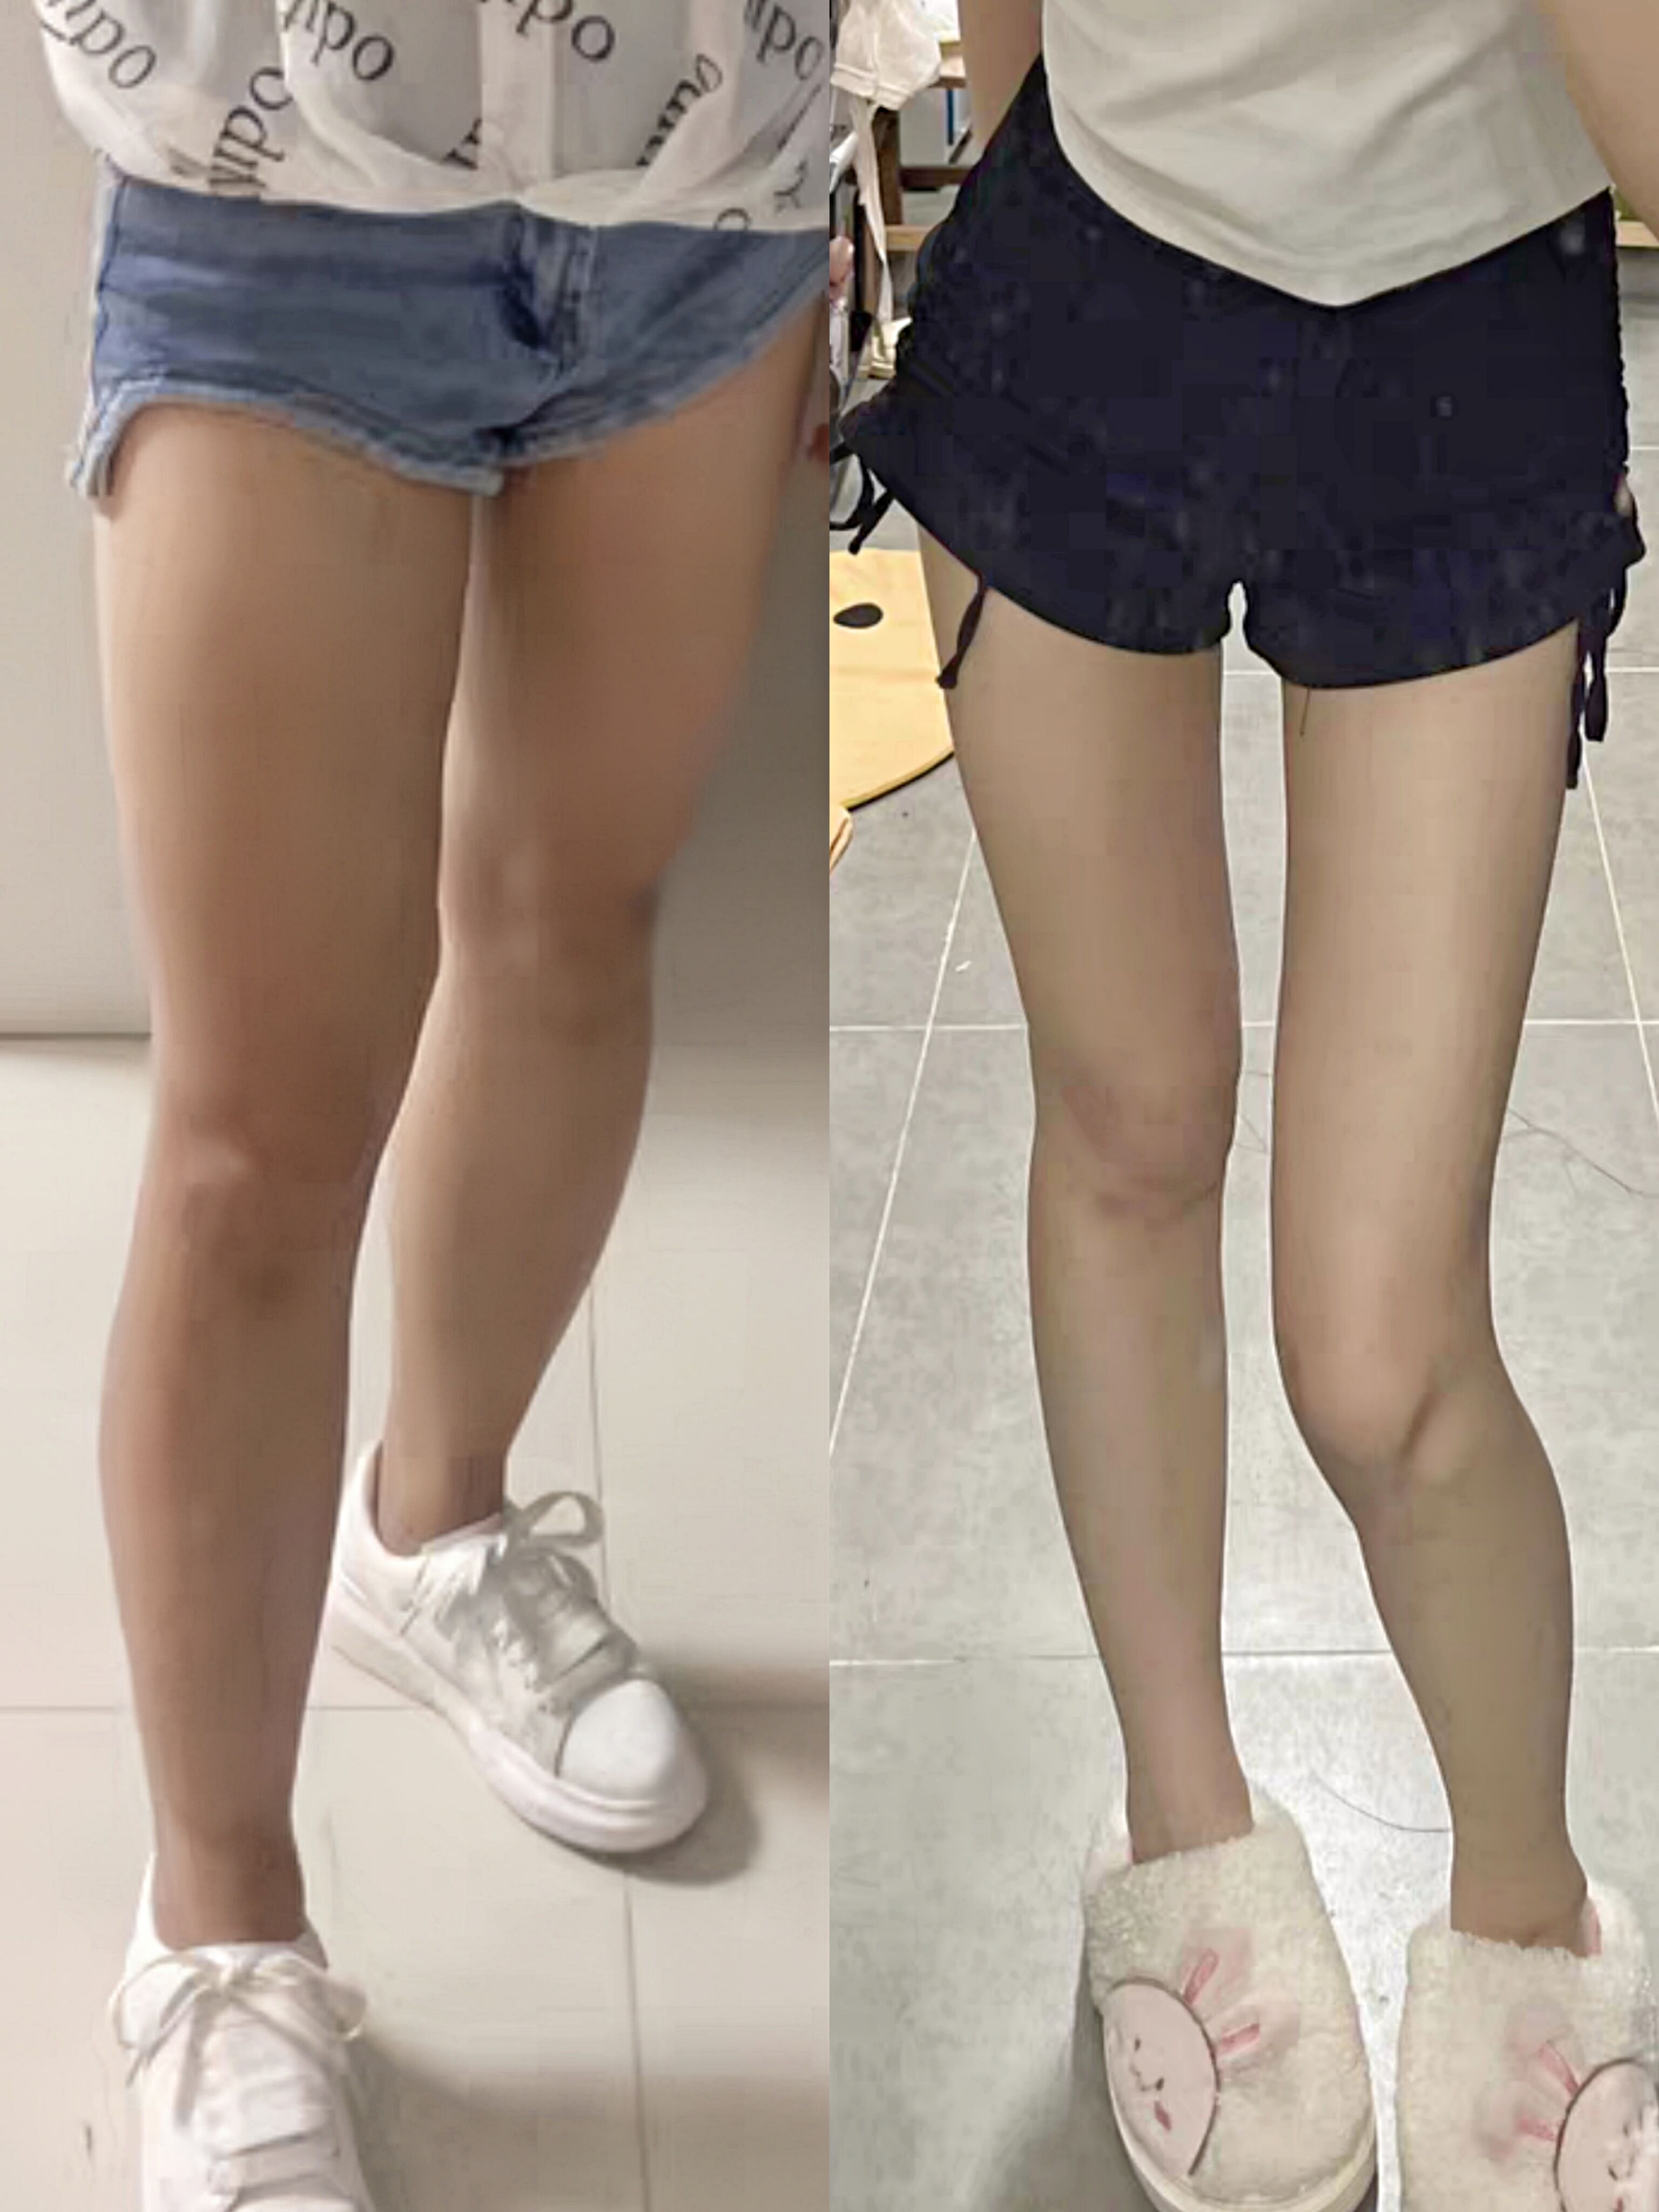 瘦腿前后对比照片图片